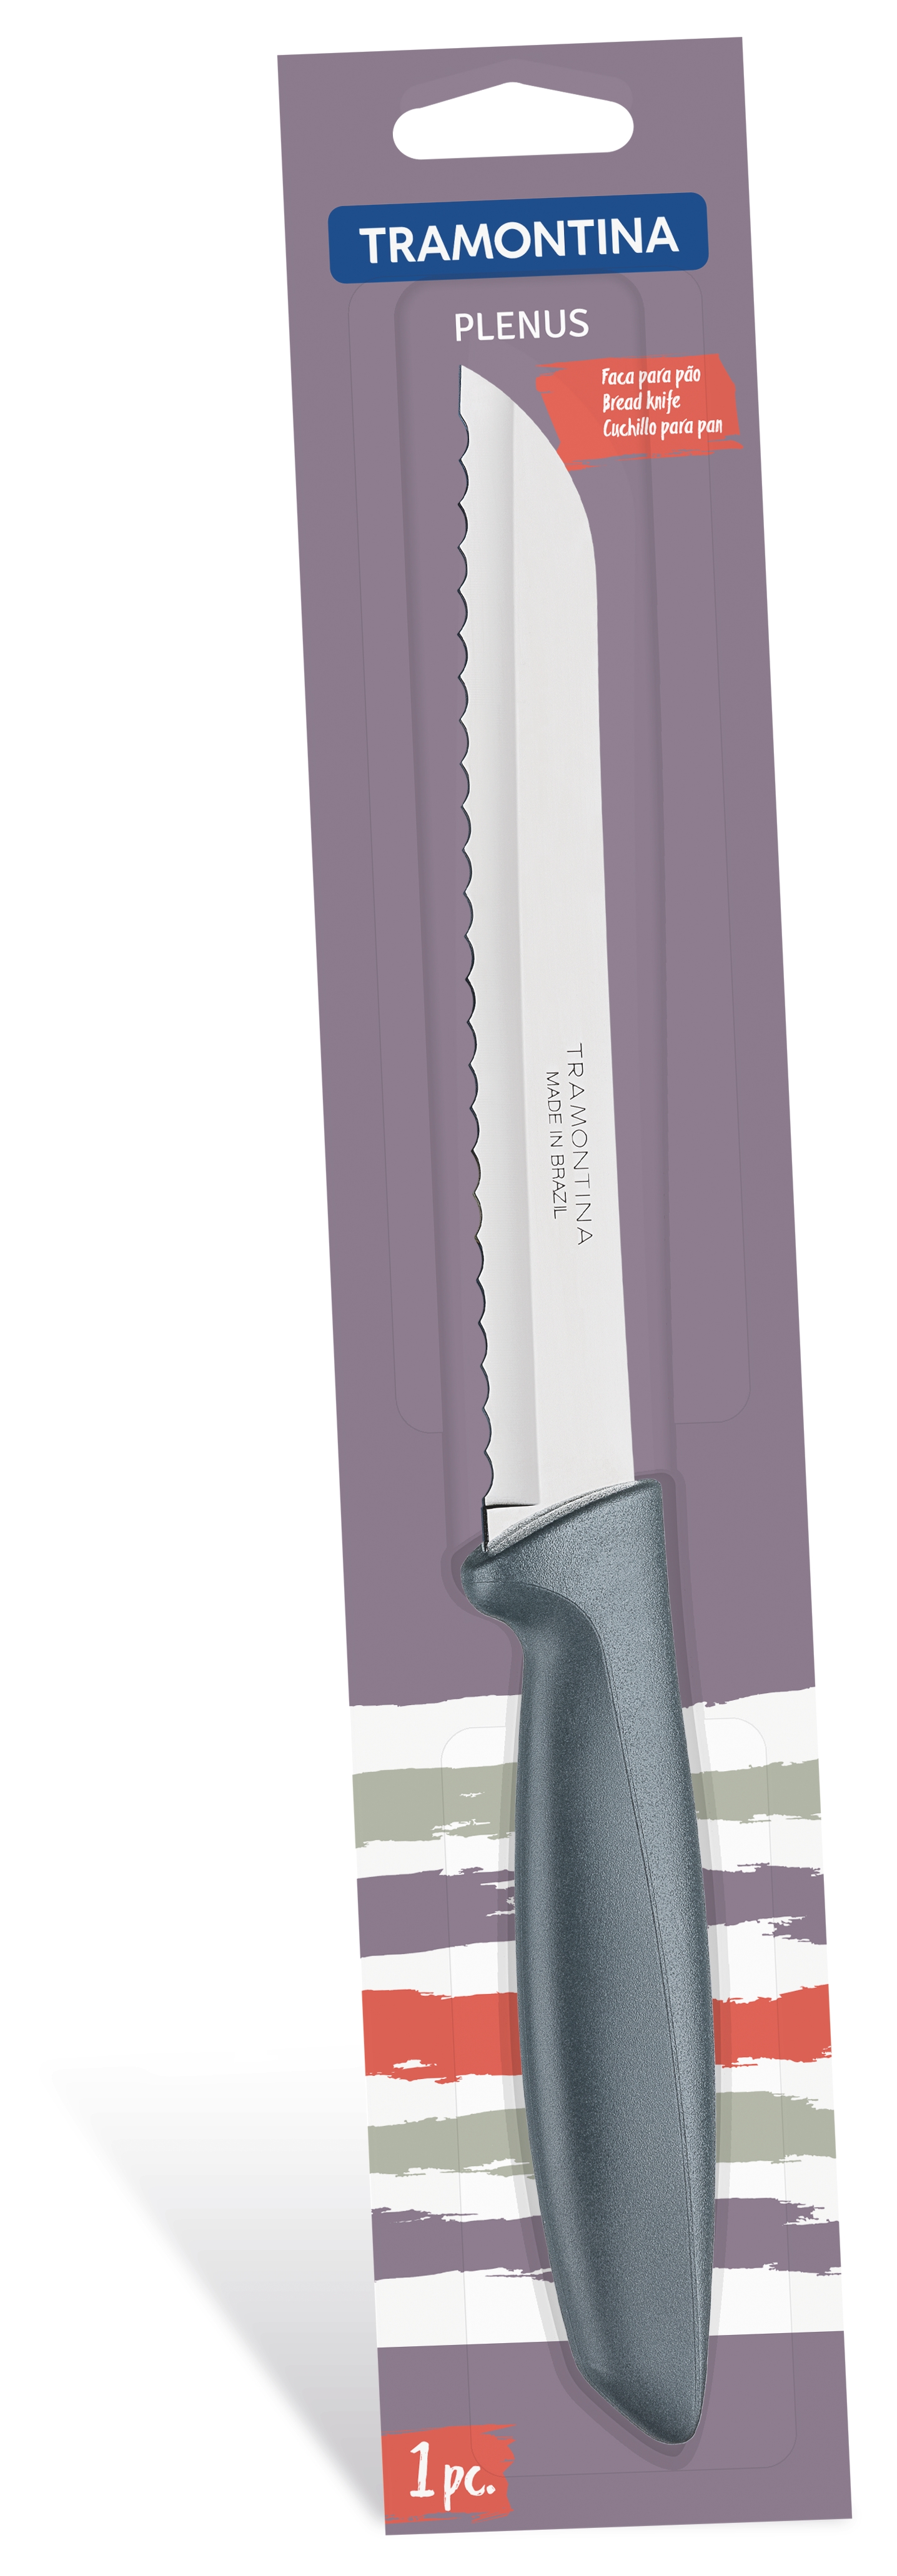 Нож для хлеба TRAMONTINA PLENUS, 203 мм (6366800)